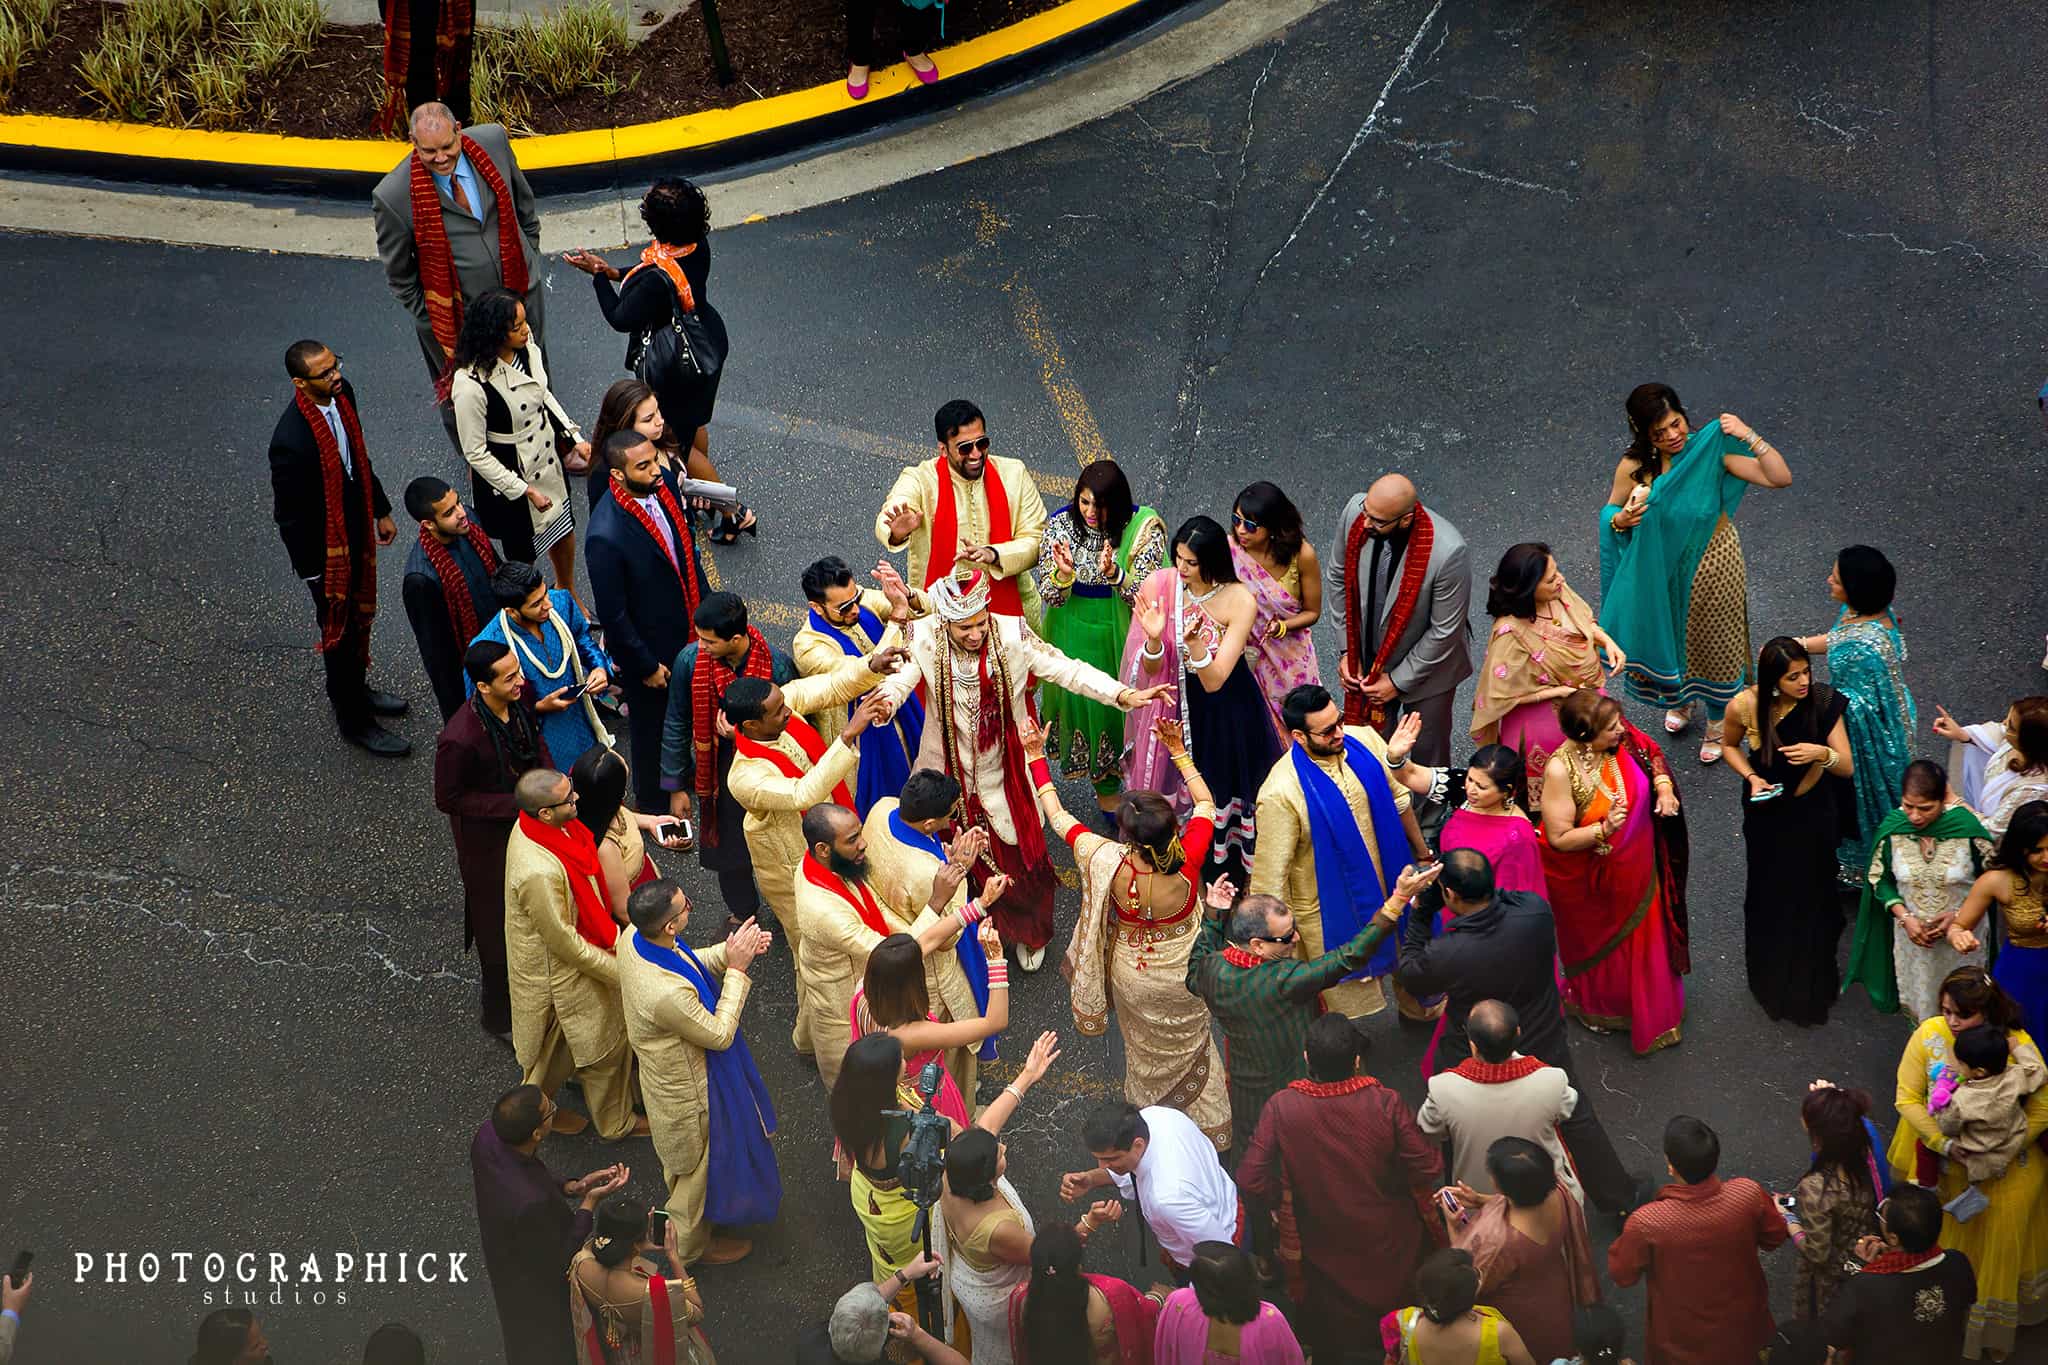 BWI Marriott Hindu Wedding, Anisha and Nakul Wedding: BWI Marriott Hindu Wedding